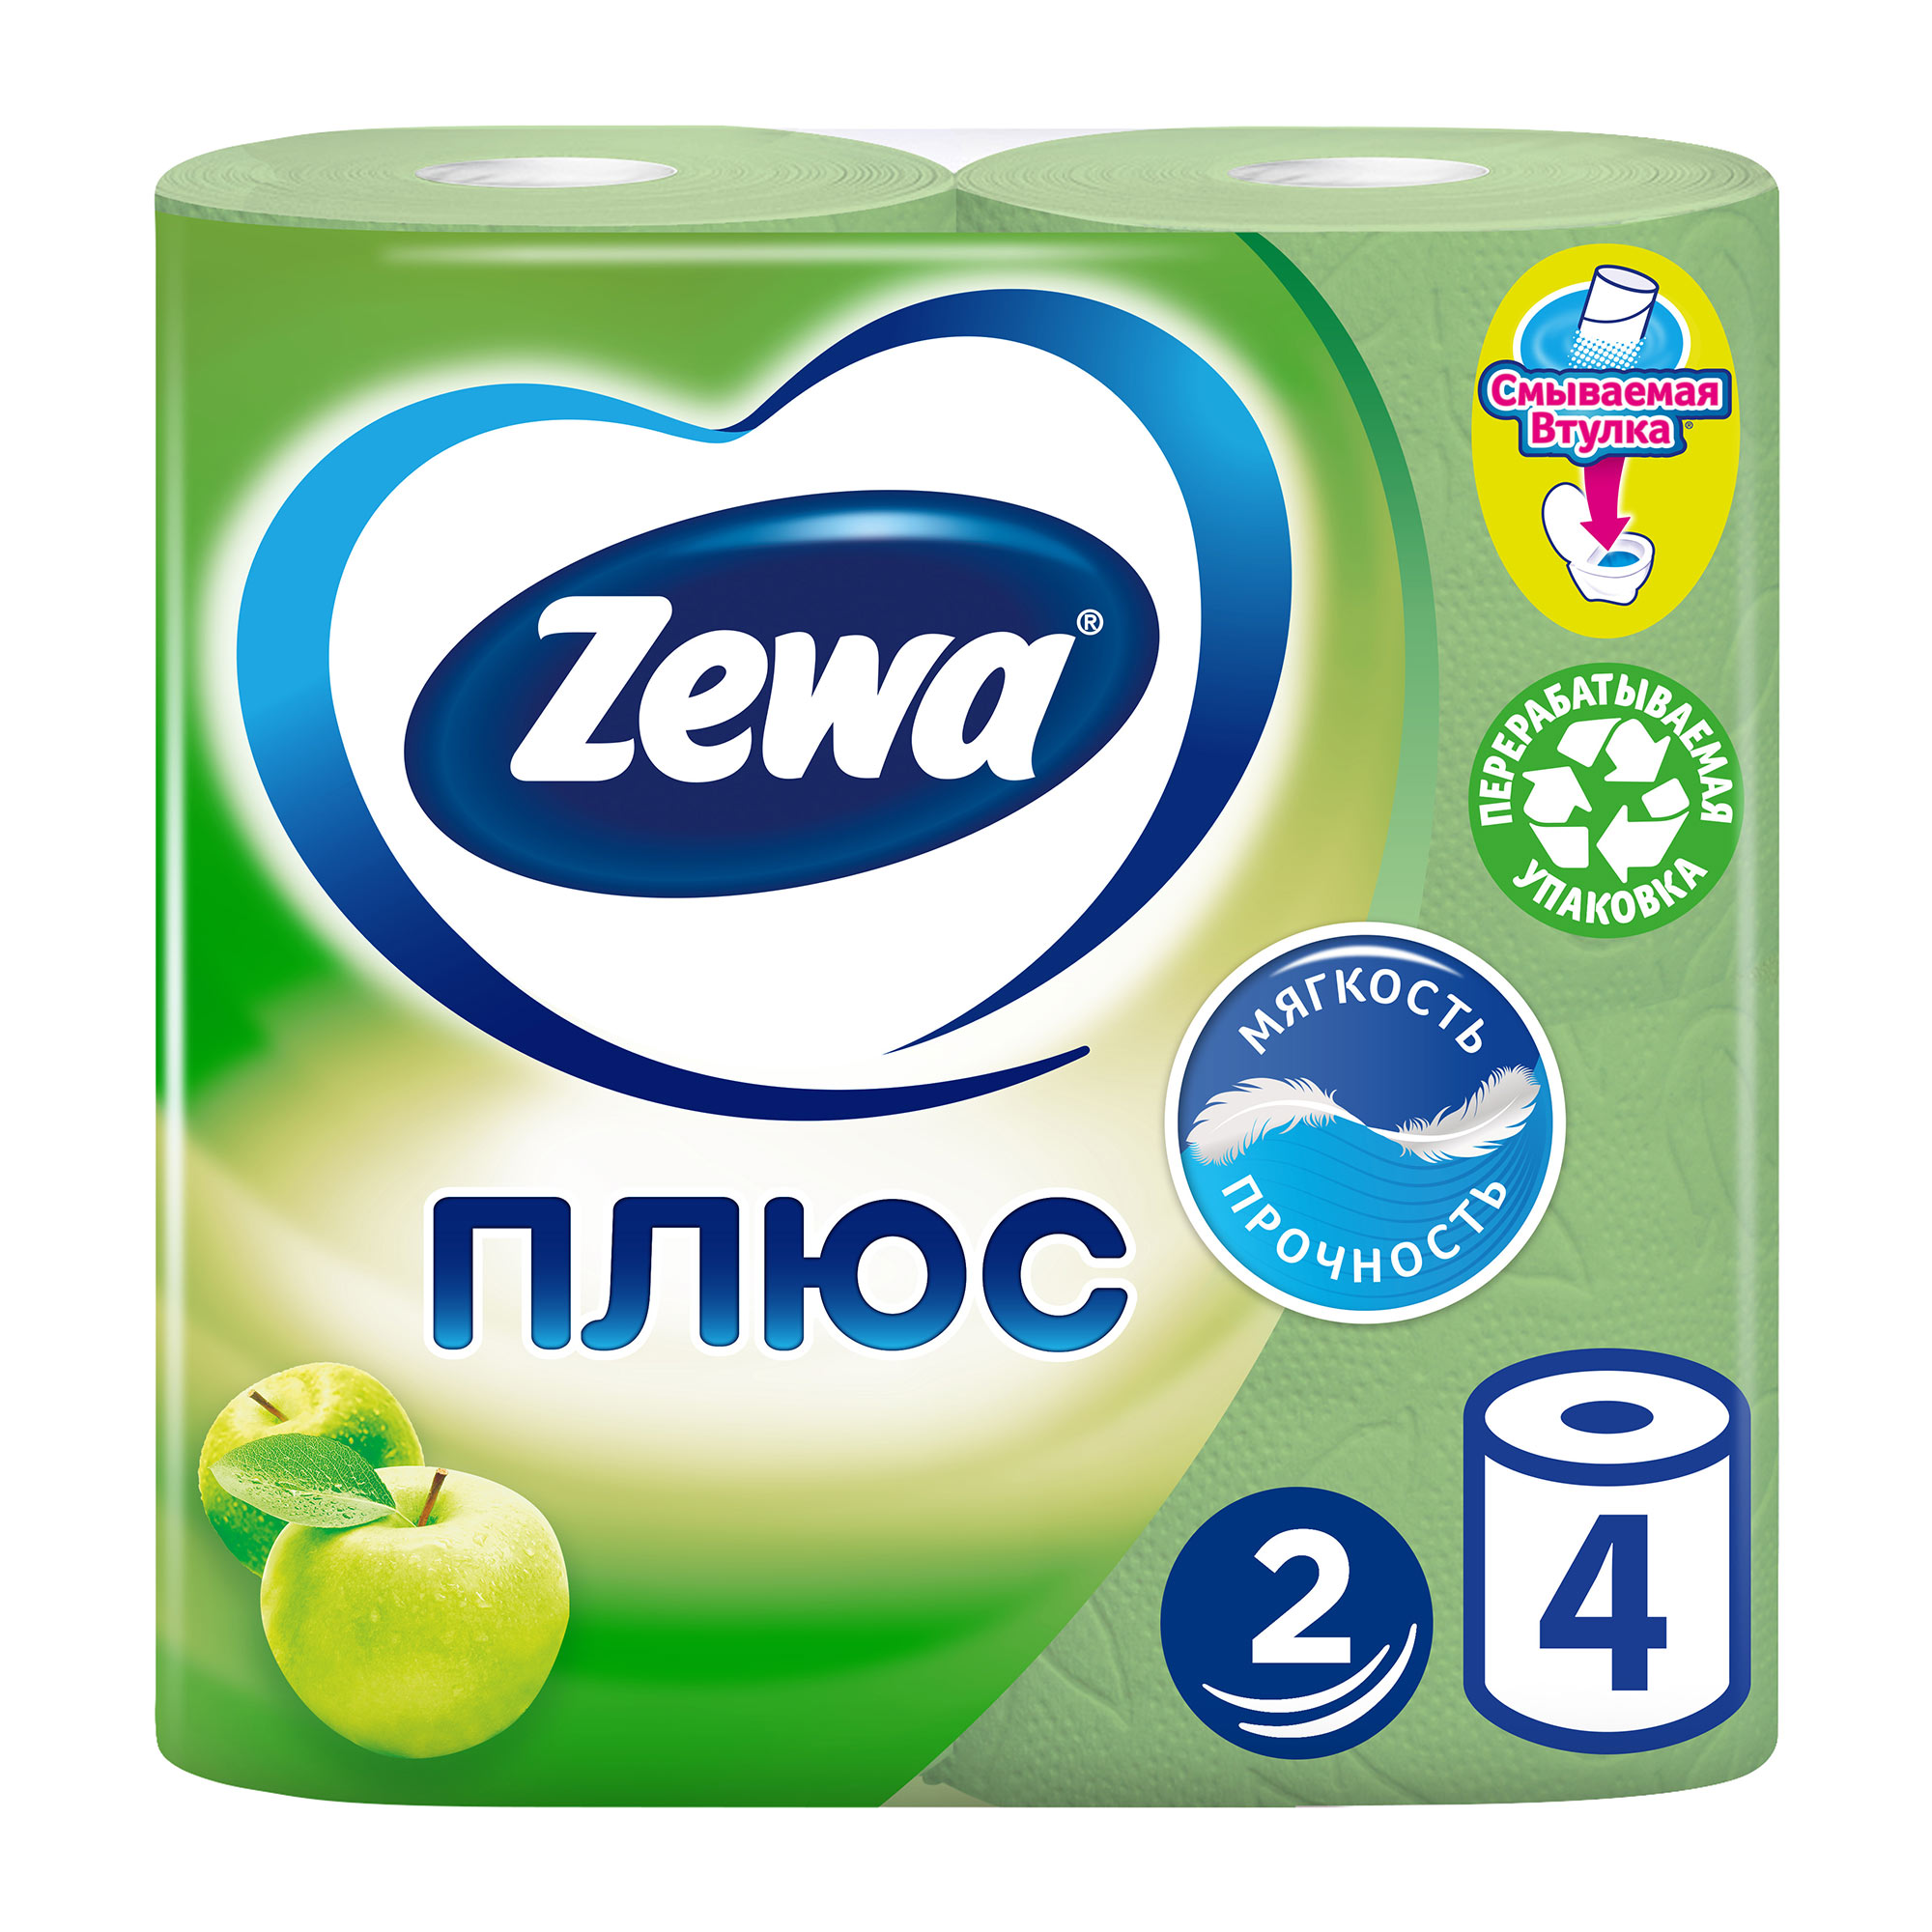 Туалетная бумага Zewa Плюс Яблоко, 2 слоя, 4 рулона туалетная бумага tork белая 2 хслойная 4 рулона